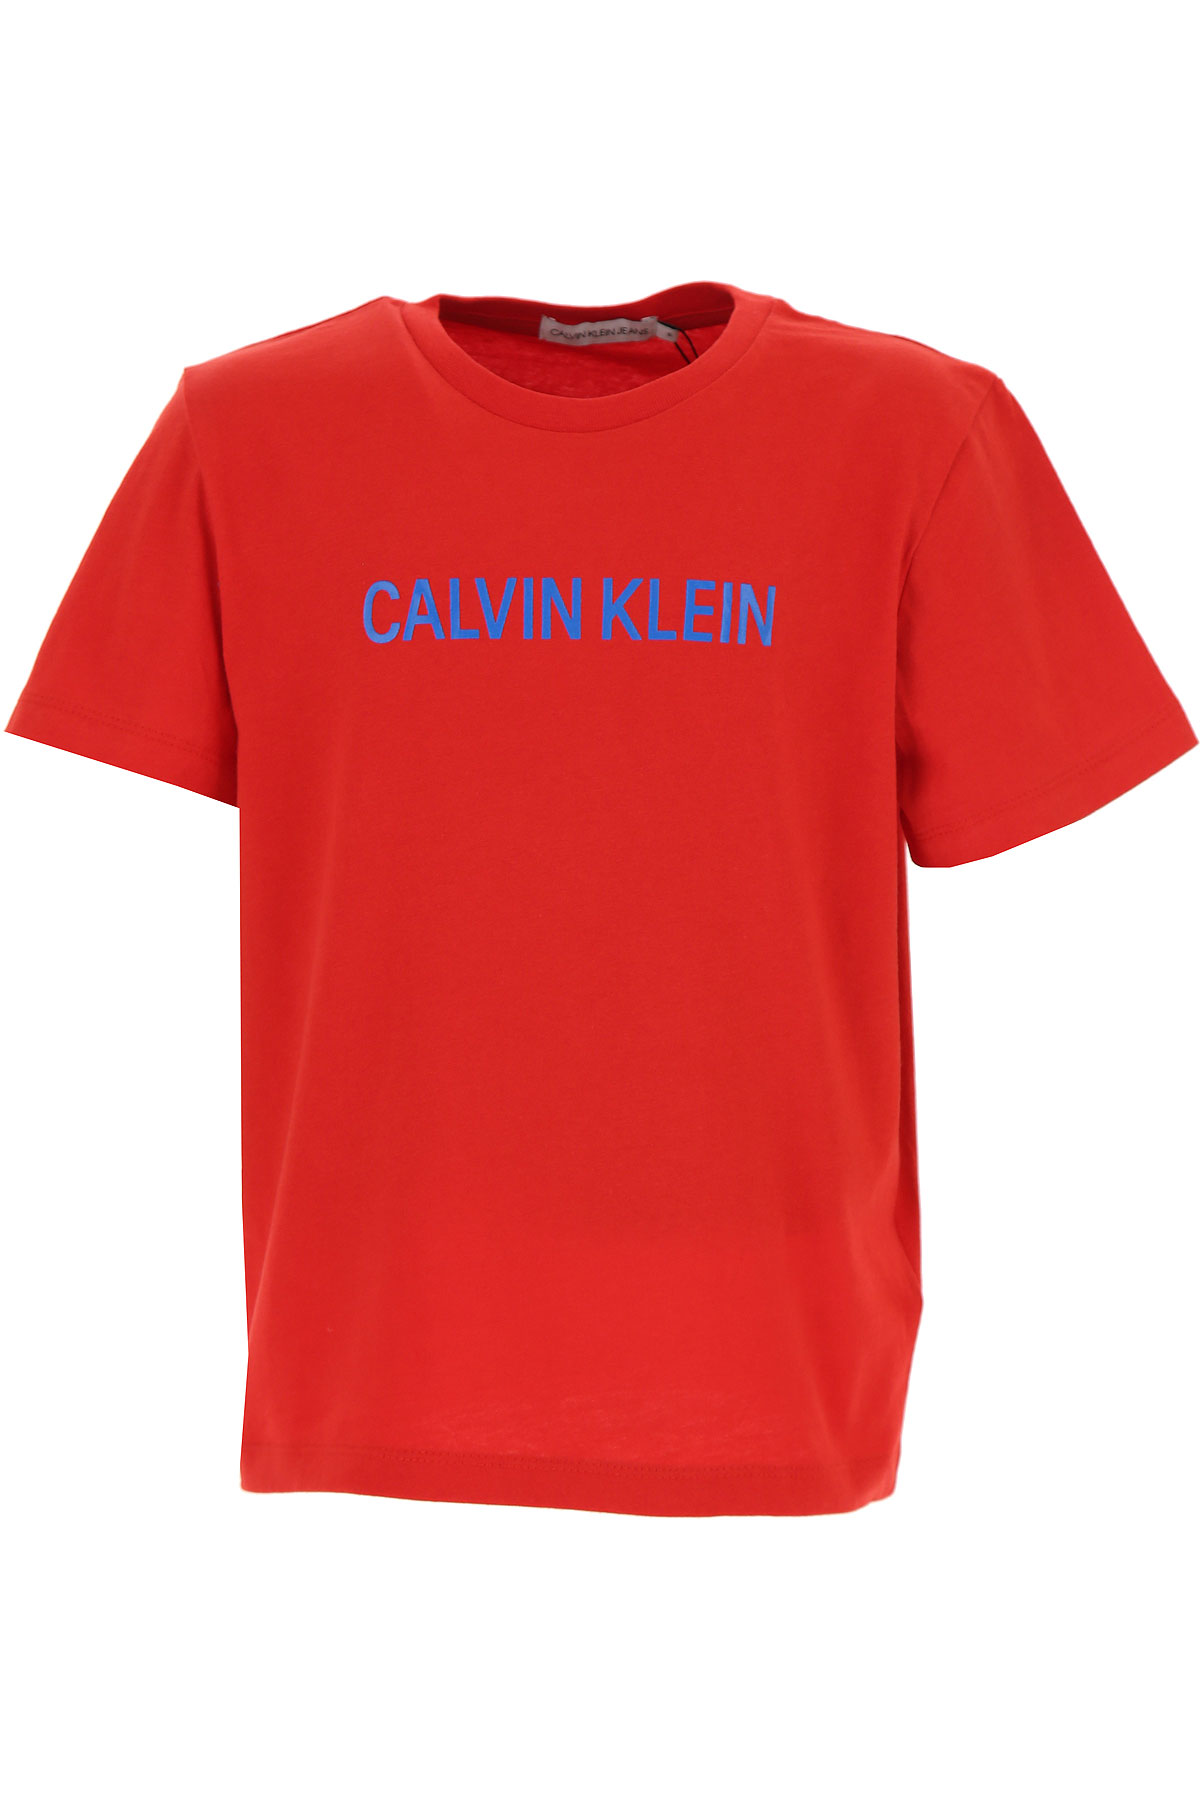 Calvin Klein Kinder T-Shirt für Jungen Günstig im Sale, Rot, Baumwolle, 2017, 4Y 6Y 8Y